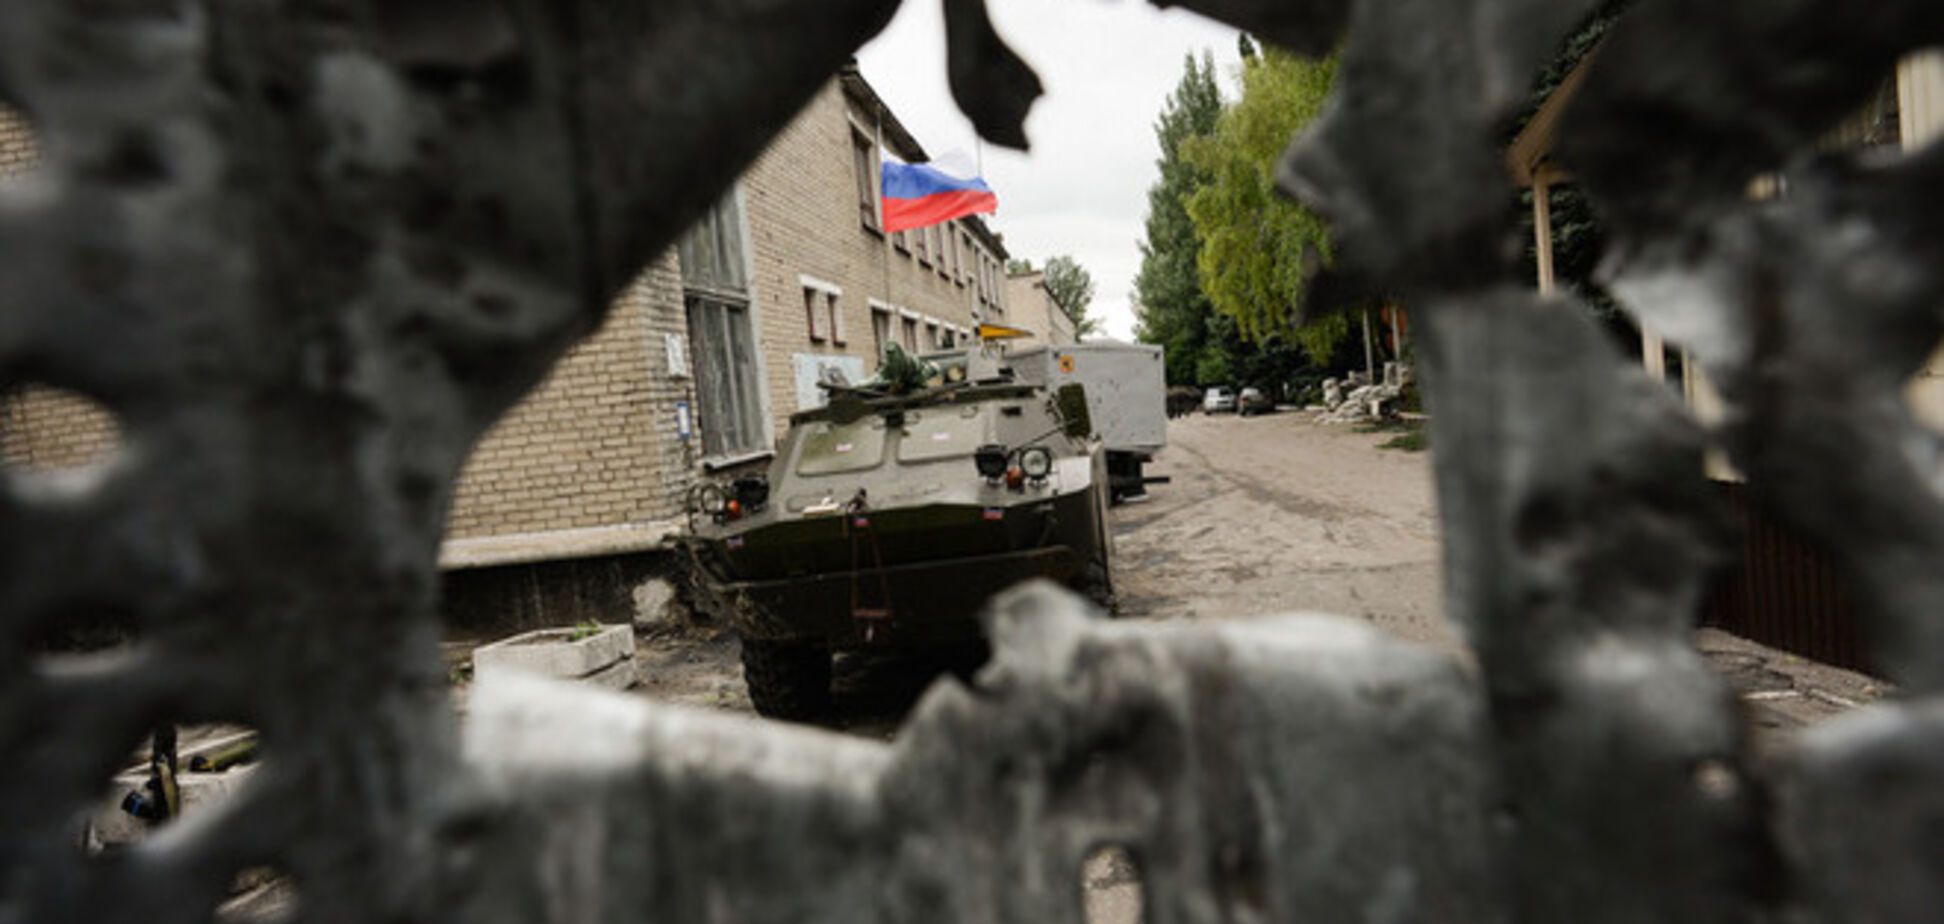 НАТО обвиняет Россию в вооружении Донбасса